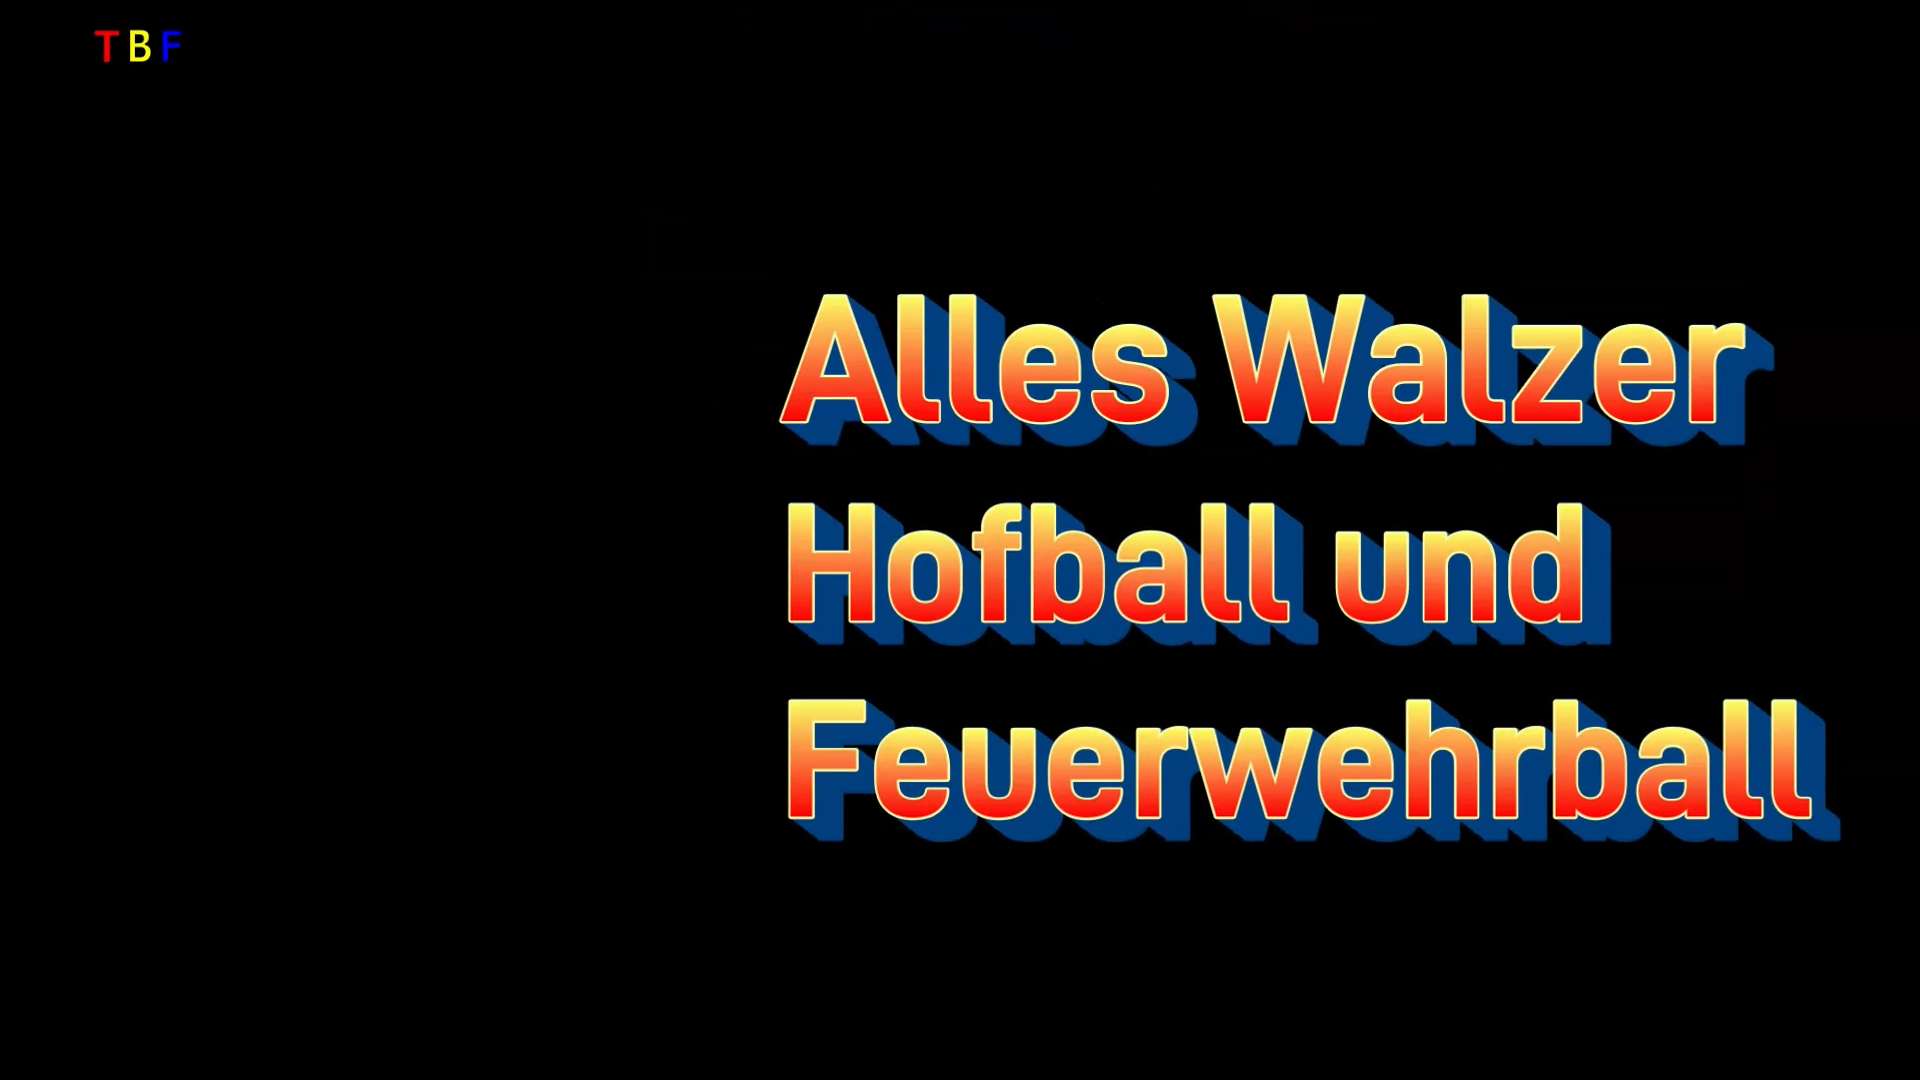 Alles Walzer - Feuerwehrball Schweinbach und Hofball Katsdorf